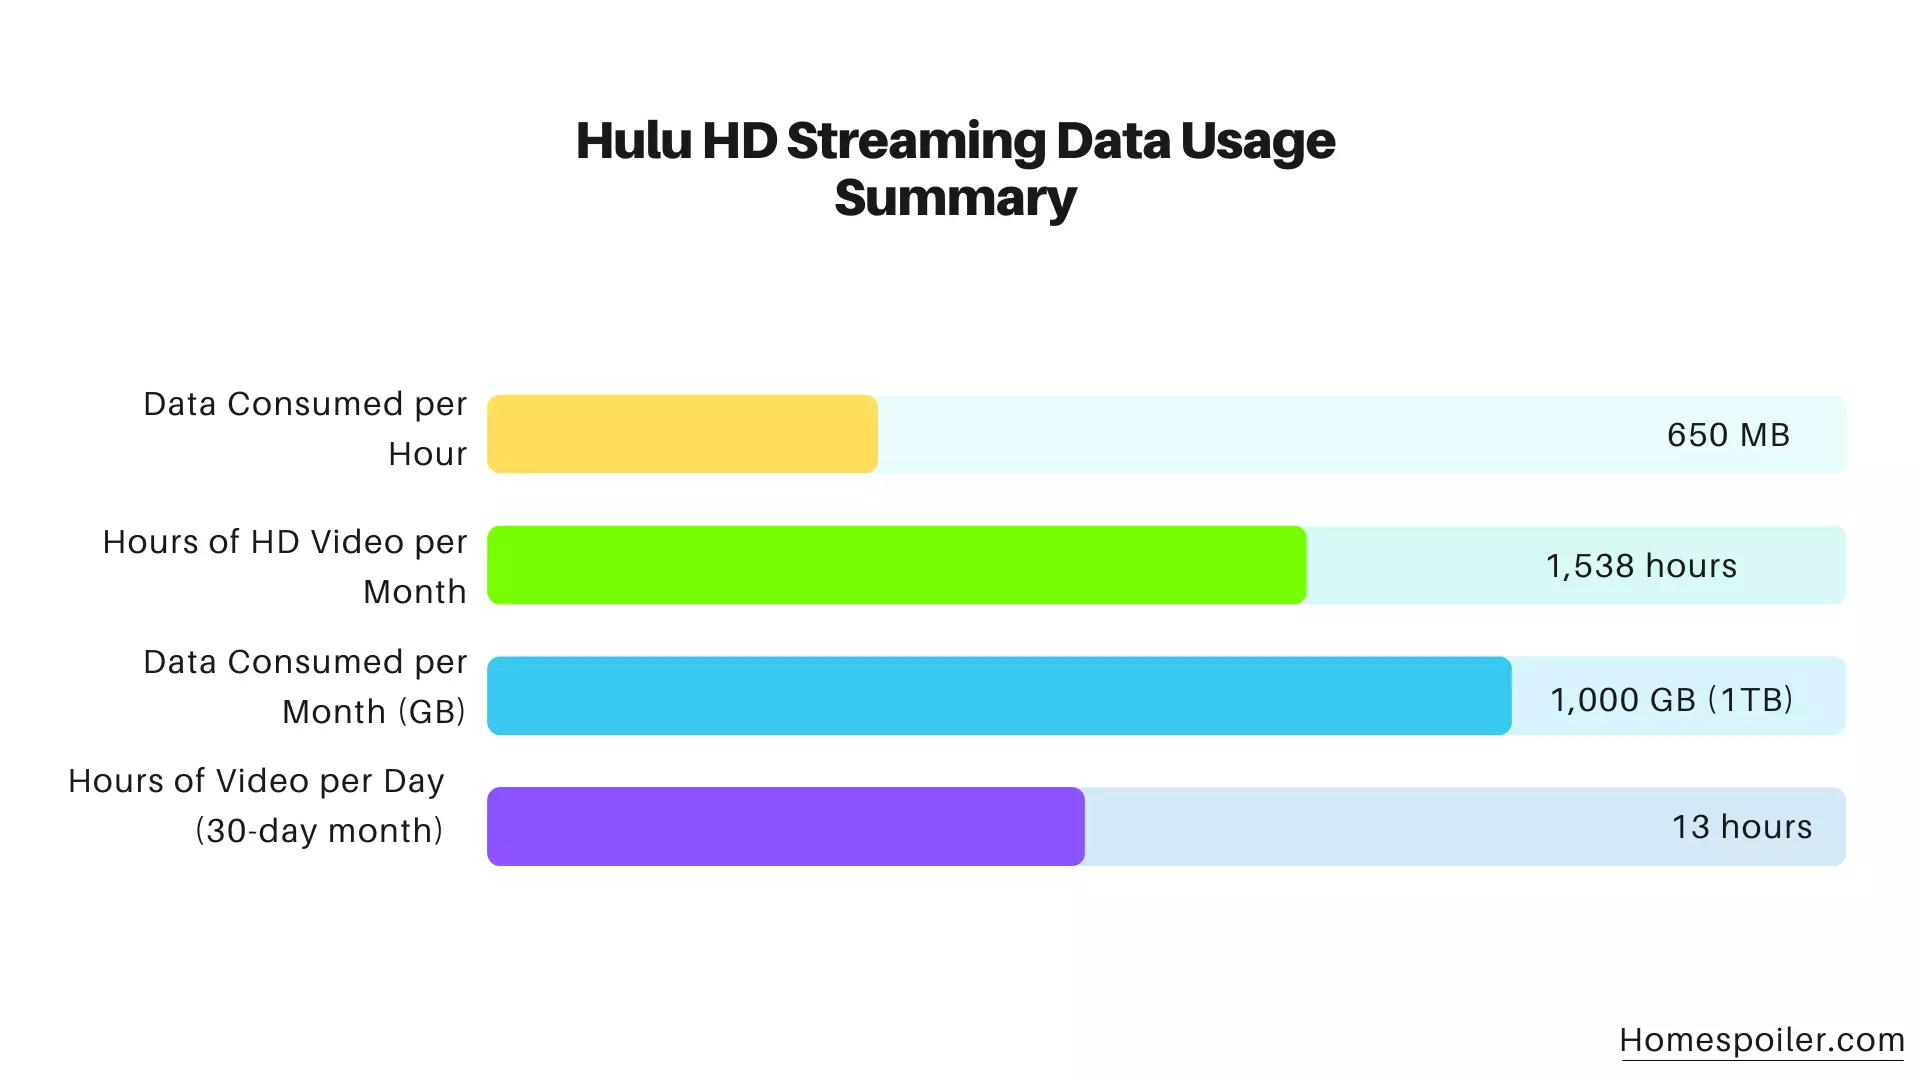 Hulu HD Streaming Data Usage Summary